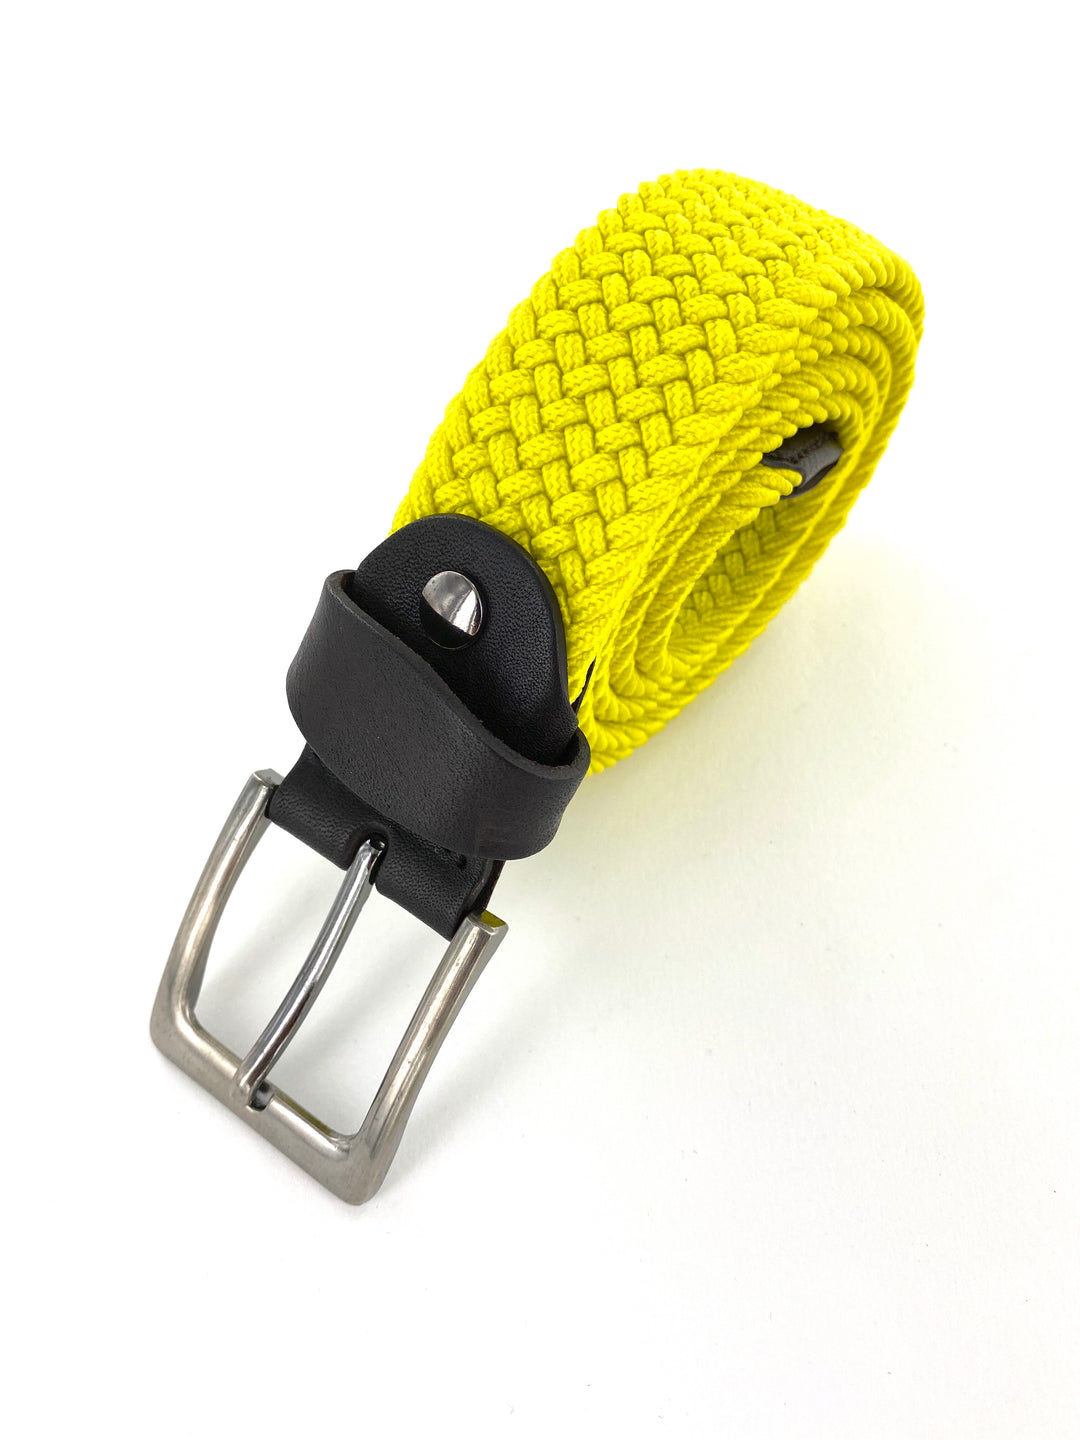 Ceinture élastique et cuir jaune. Plus besoin de réglages avec les ceintures élastiques, elles s'adaptent facilement. Les ceintures élastiques sont très faciles à porter, avec un jean pour un style décontractée mais aussi bien pour un style habillé.